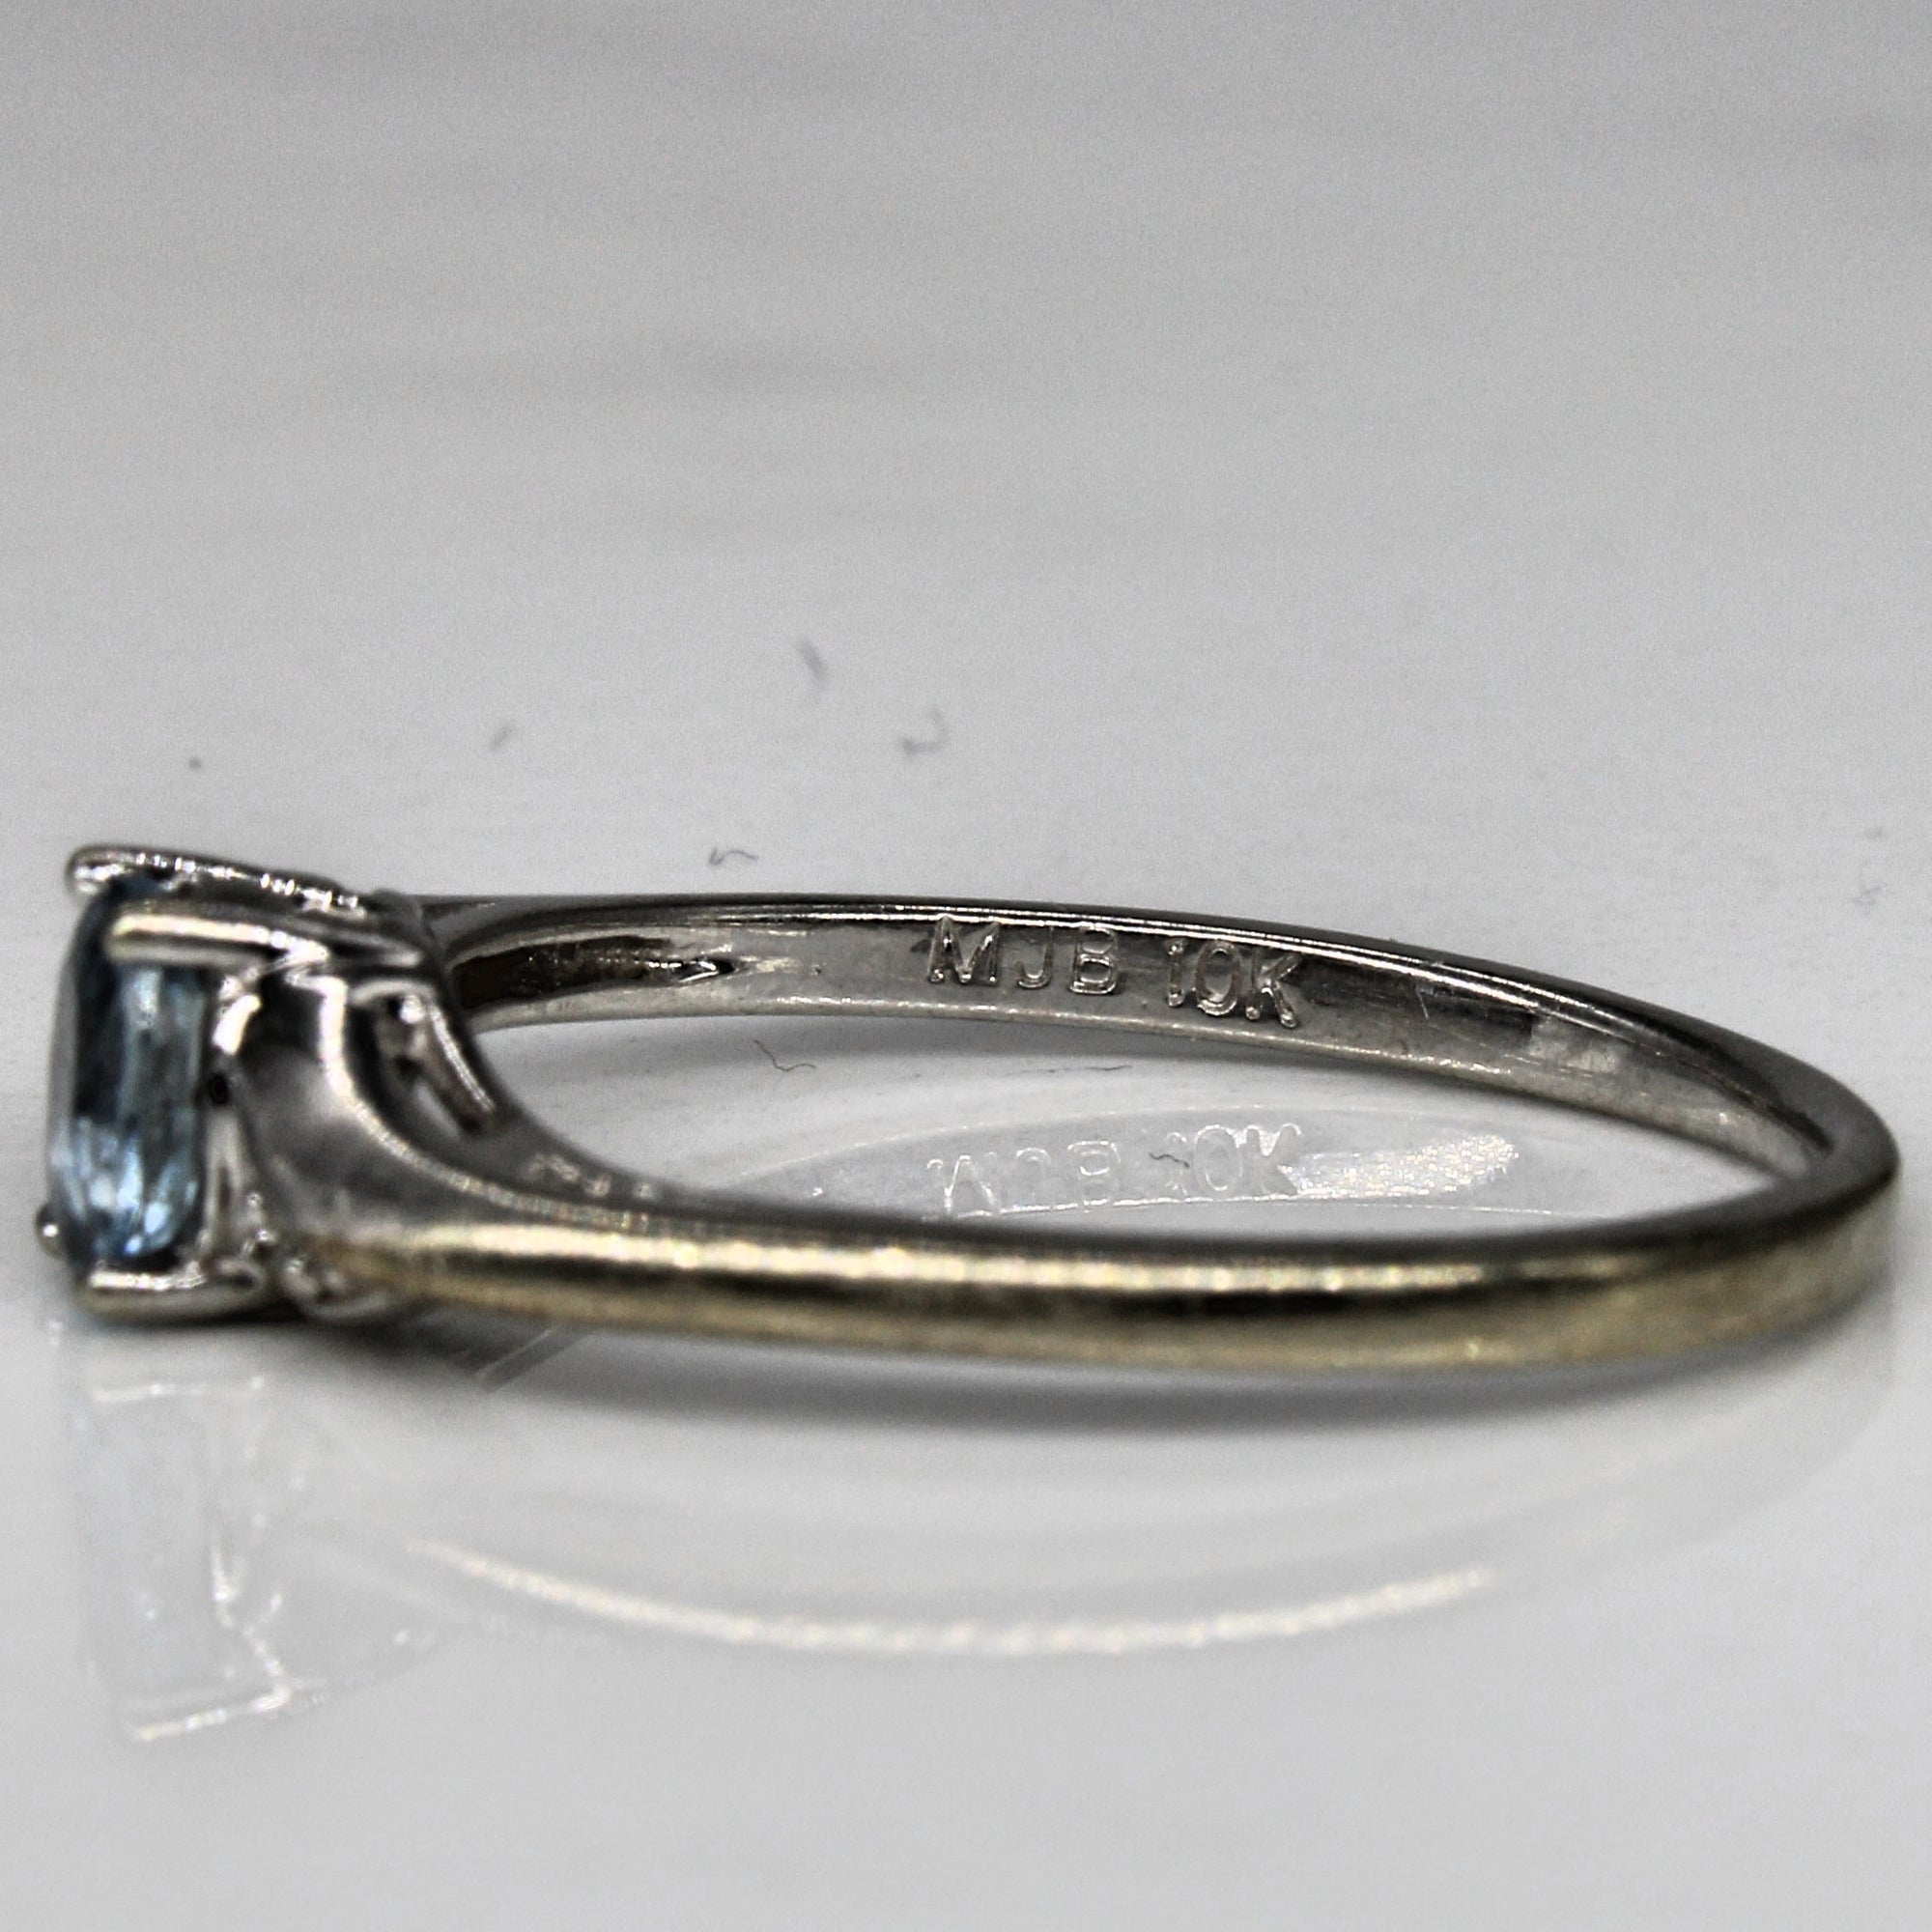 Petite Aquamarine & Diamond Ring | 0.24ct, 0.01ctw | SZ 6.5 |